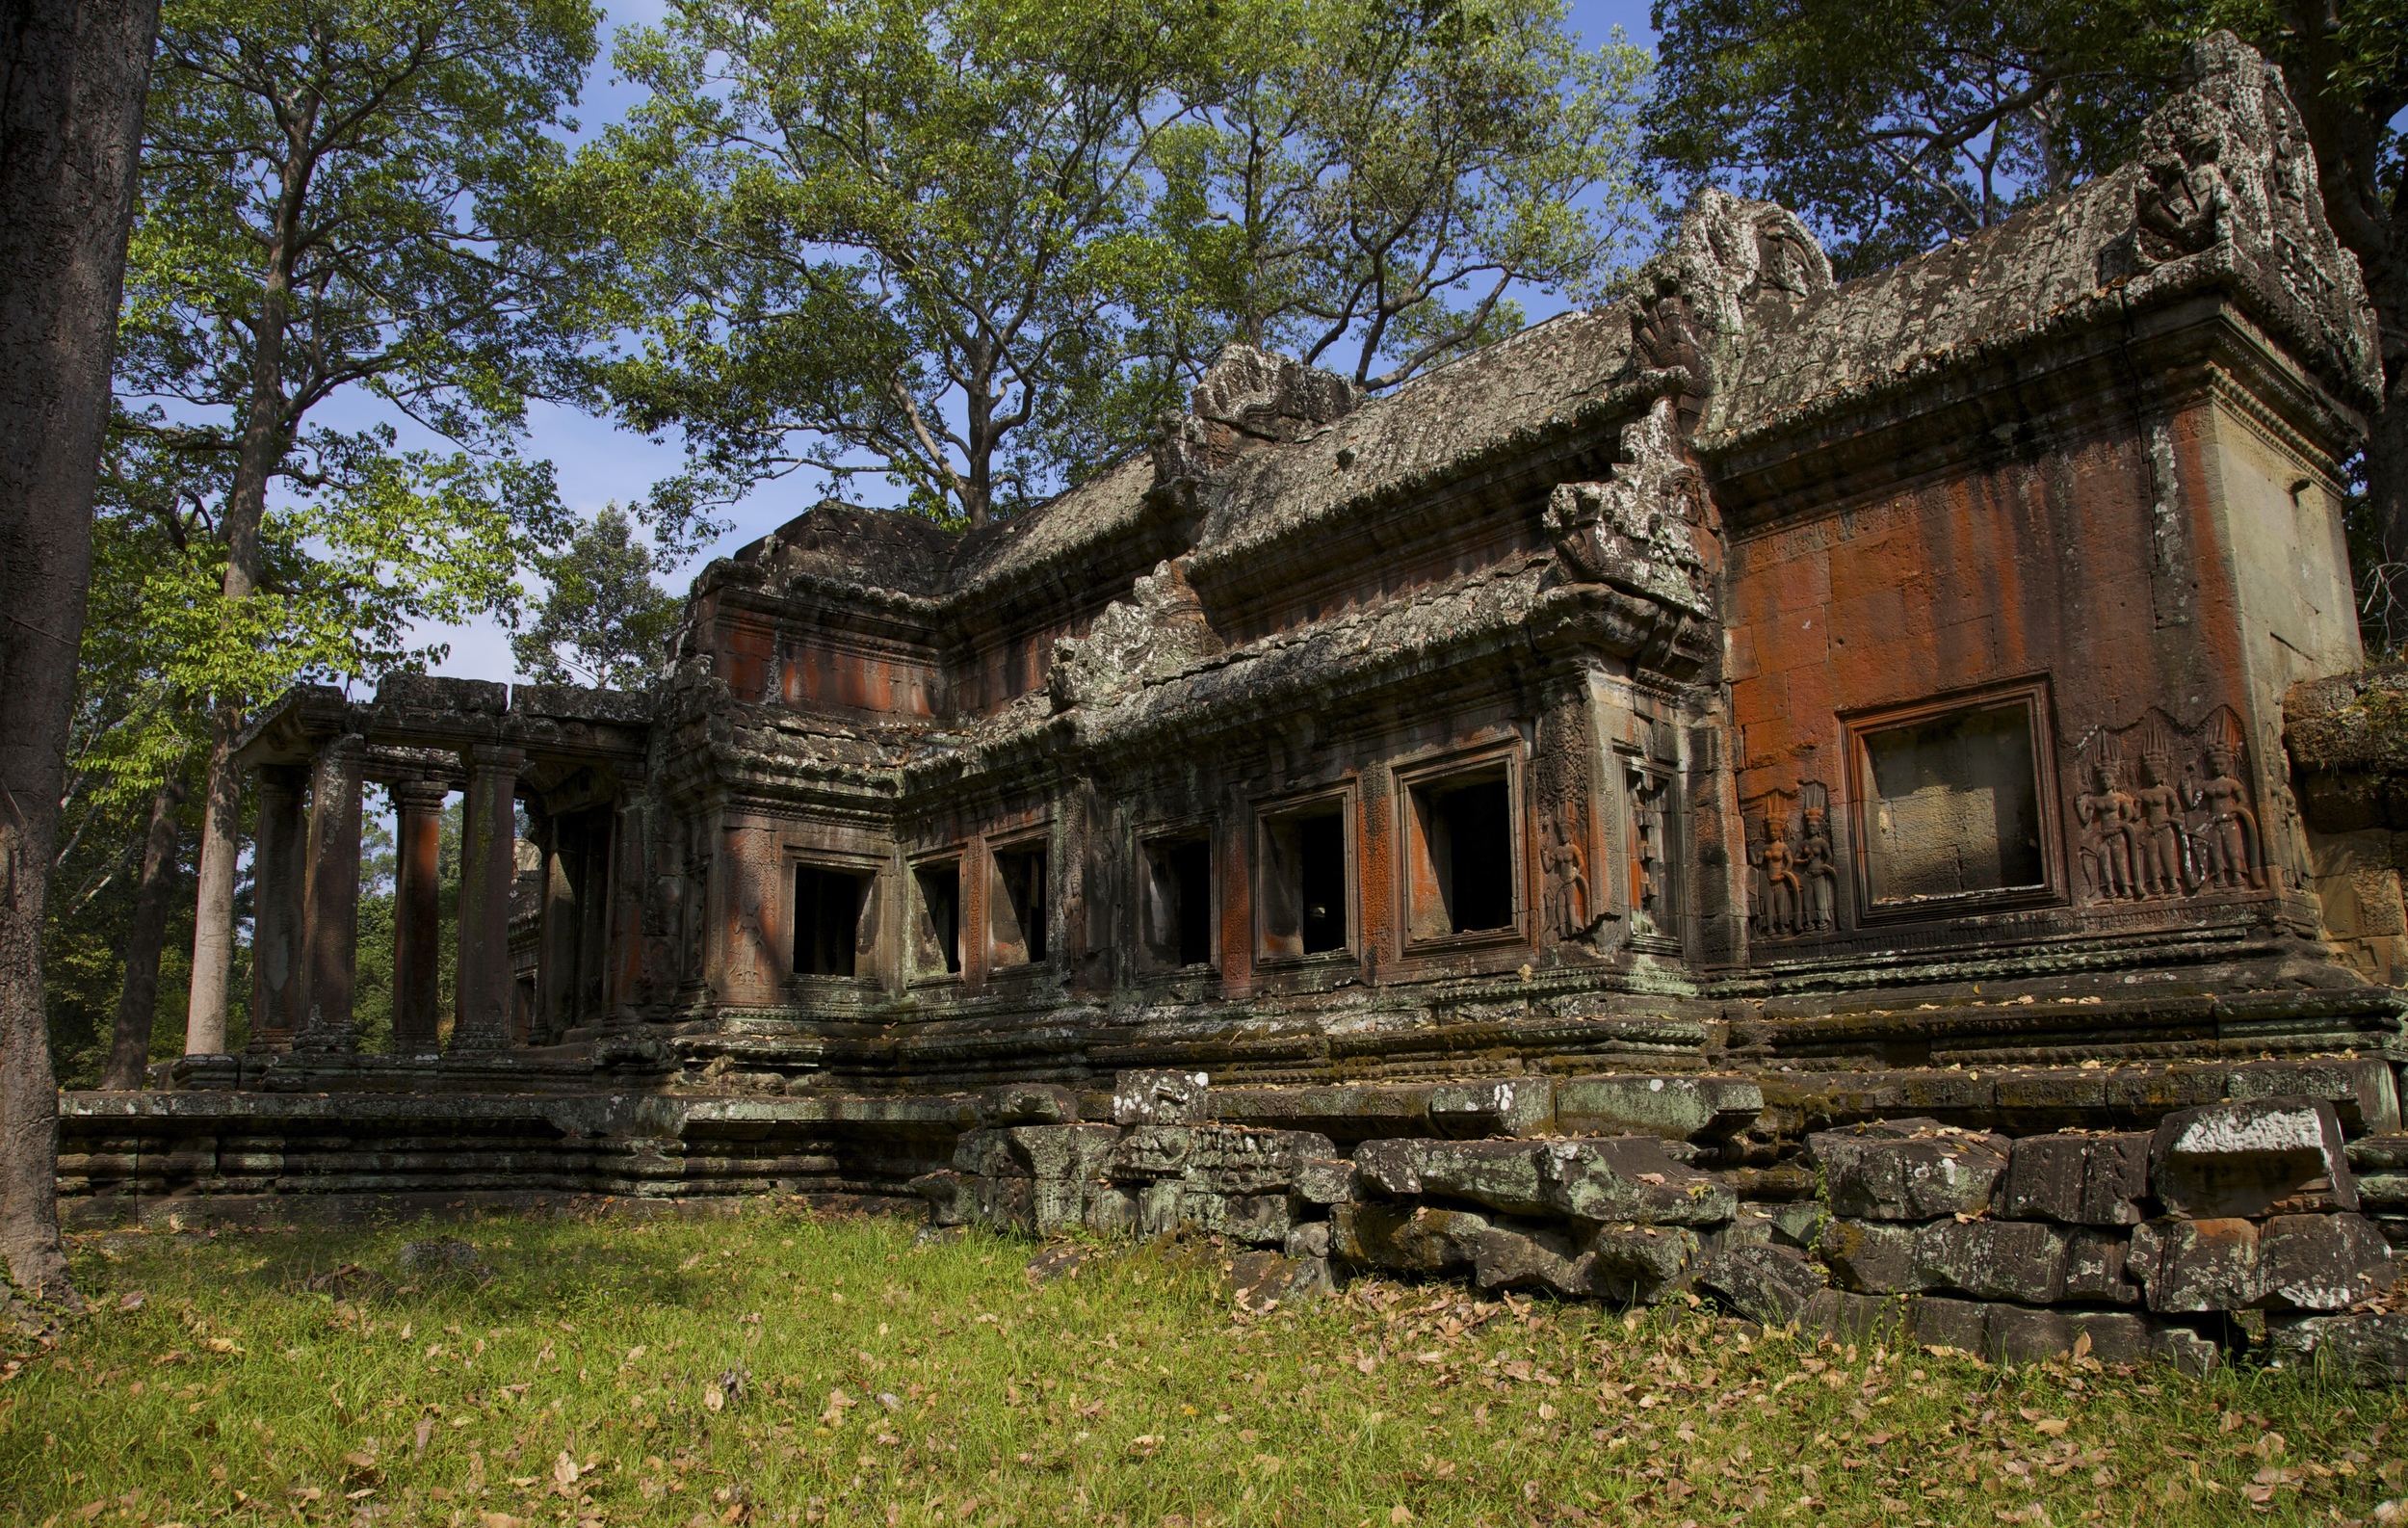 IMG_3386 - Version 2 Angkor Wat west Gate 2 copy.jpg